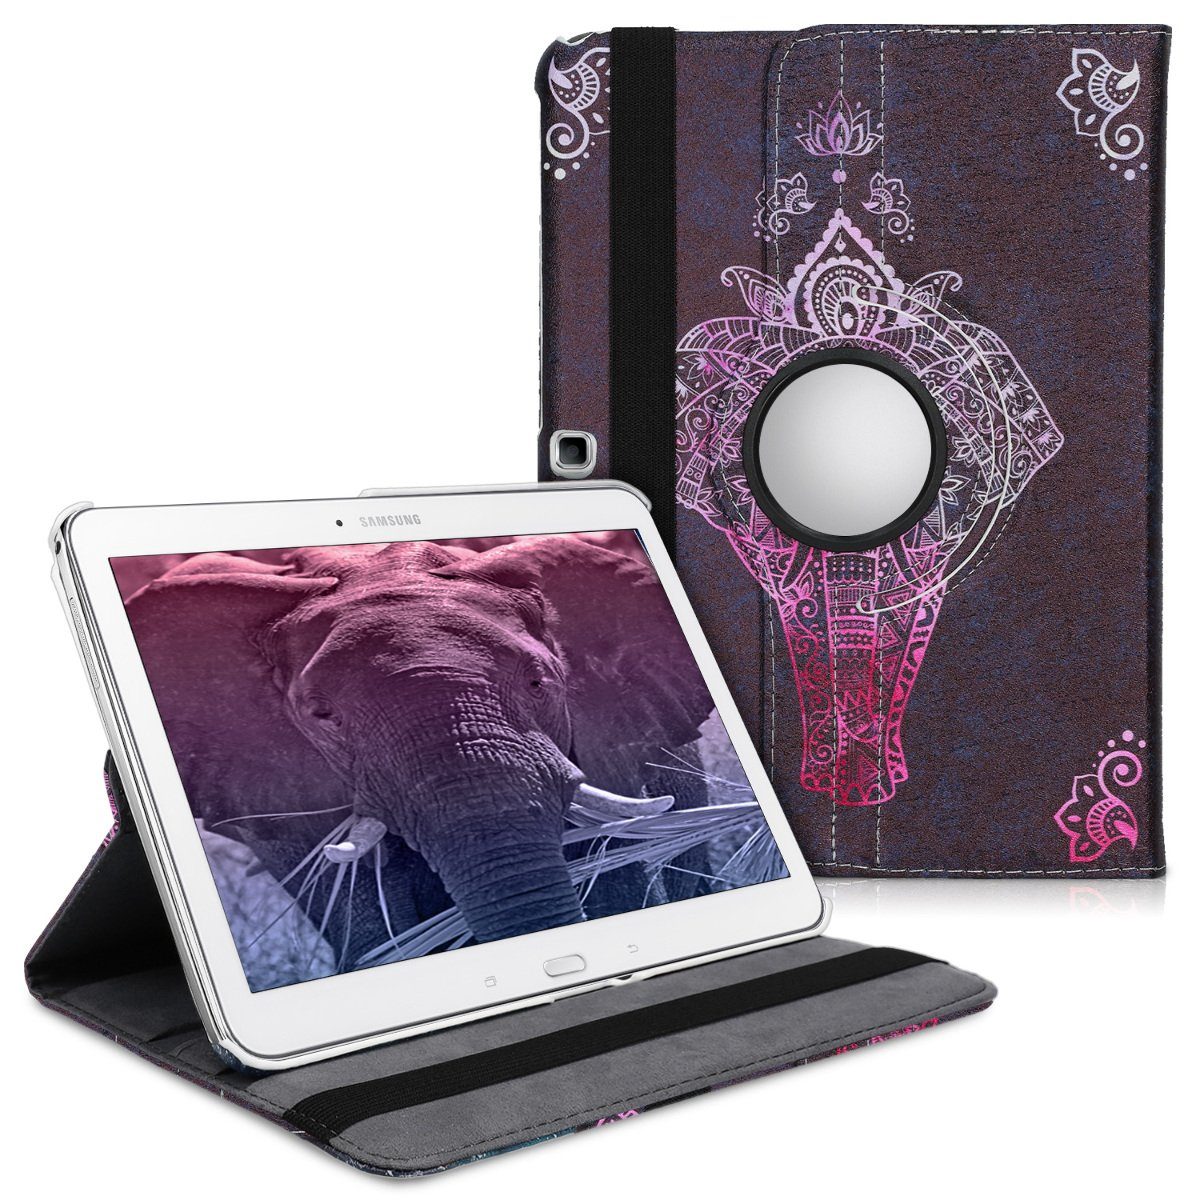 kwmobile Tablet-Hülle, Hülle für Samsung Galaxy Tab 4 10.1 T530 / T535 -  360° Tablet Schutzhülle Cover Case - Elefant Zeichnung Design